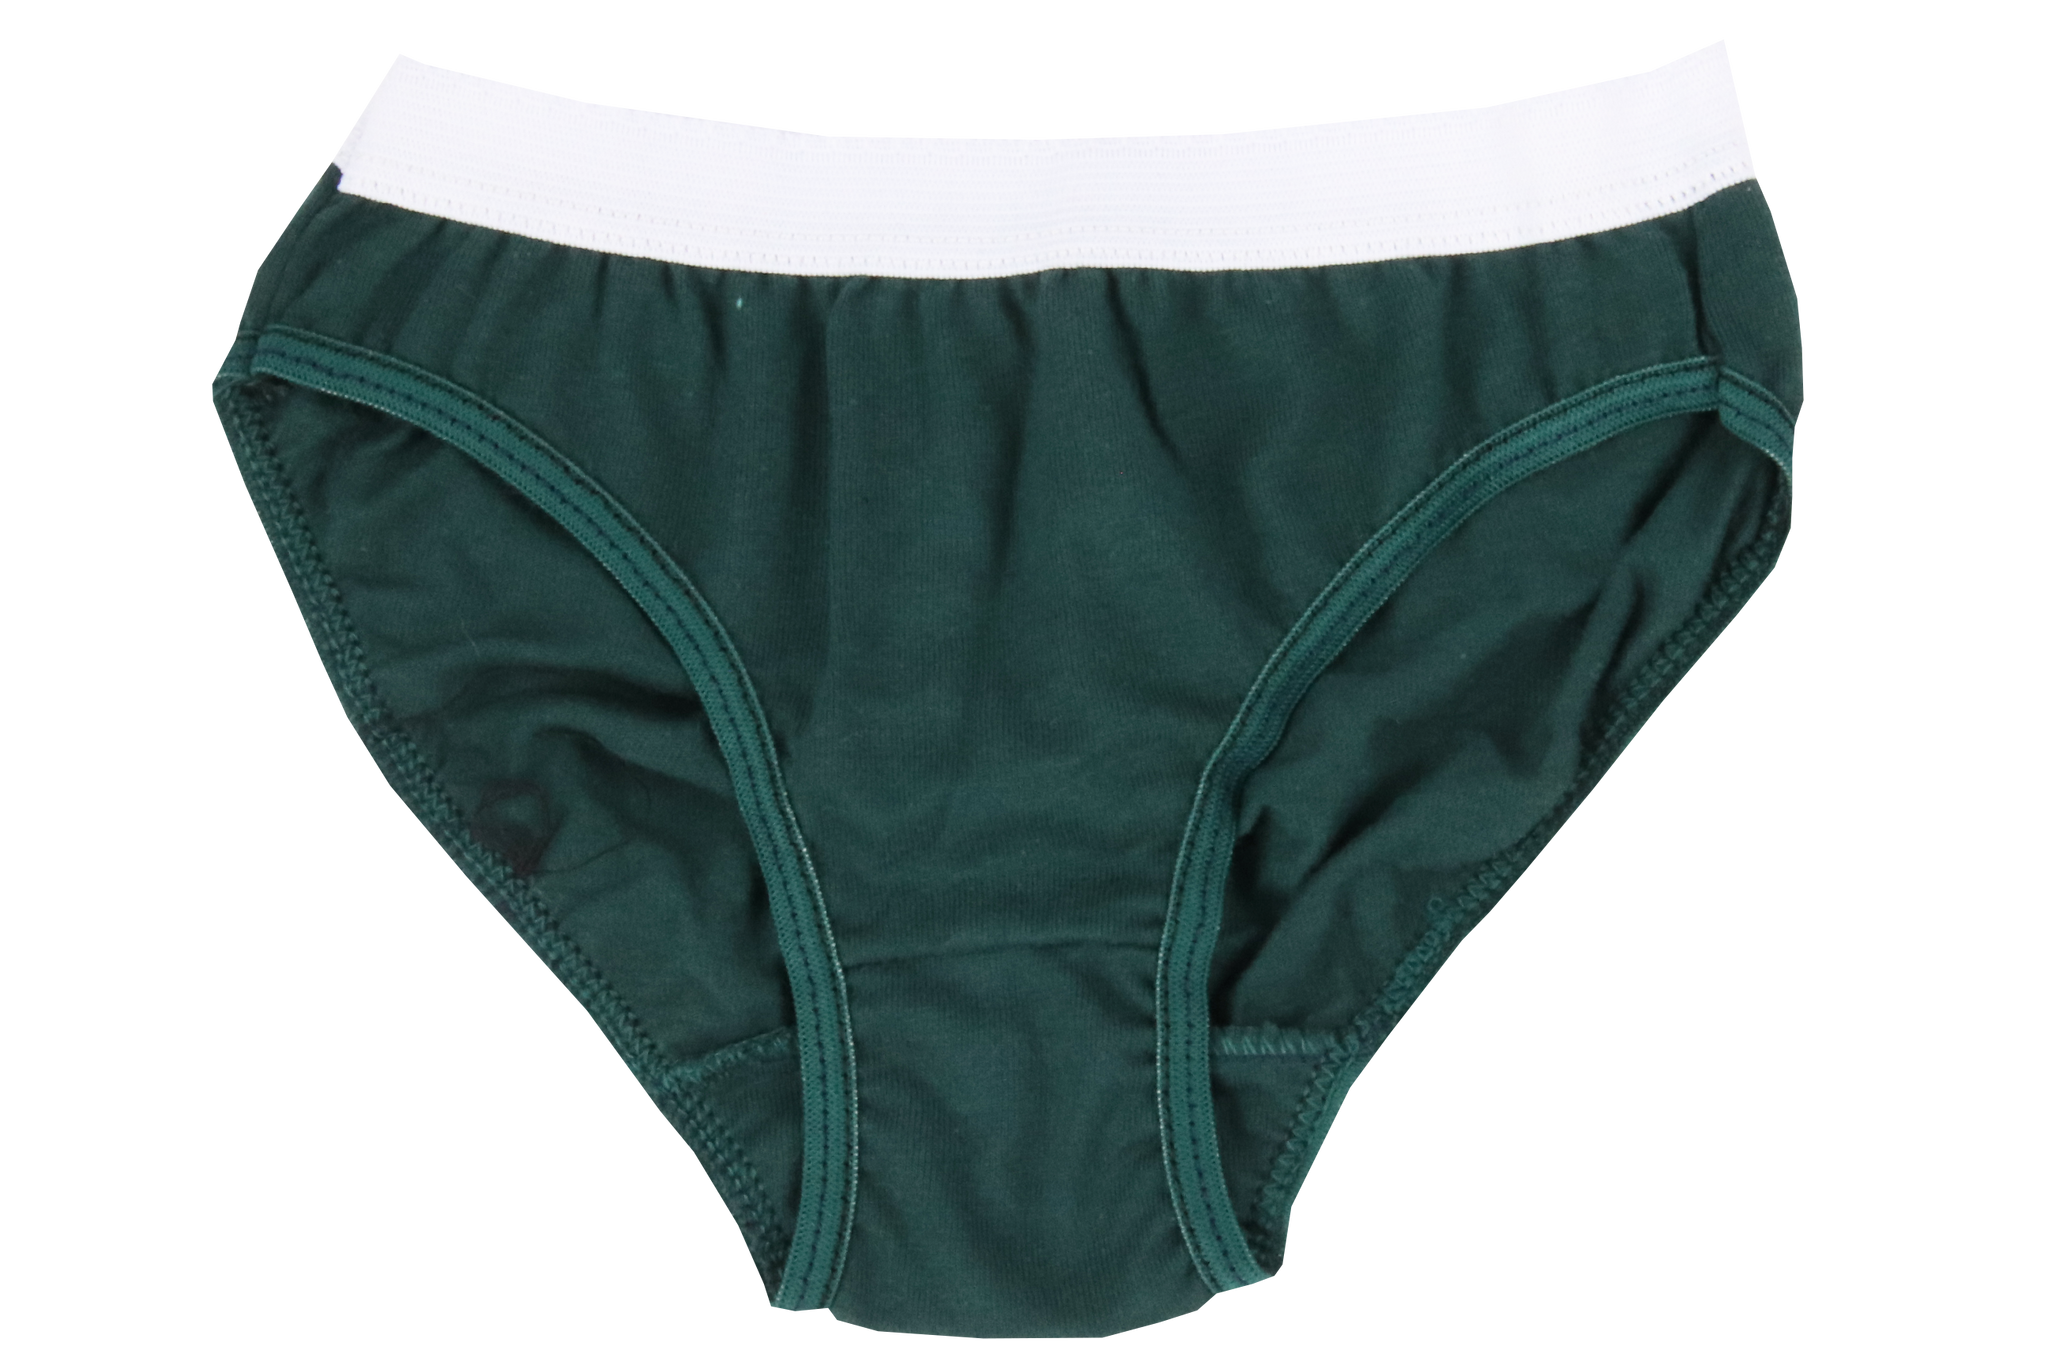 green underwear for girls